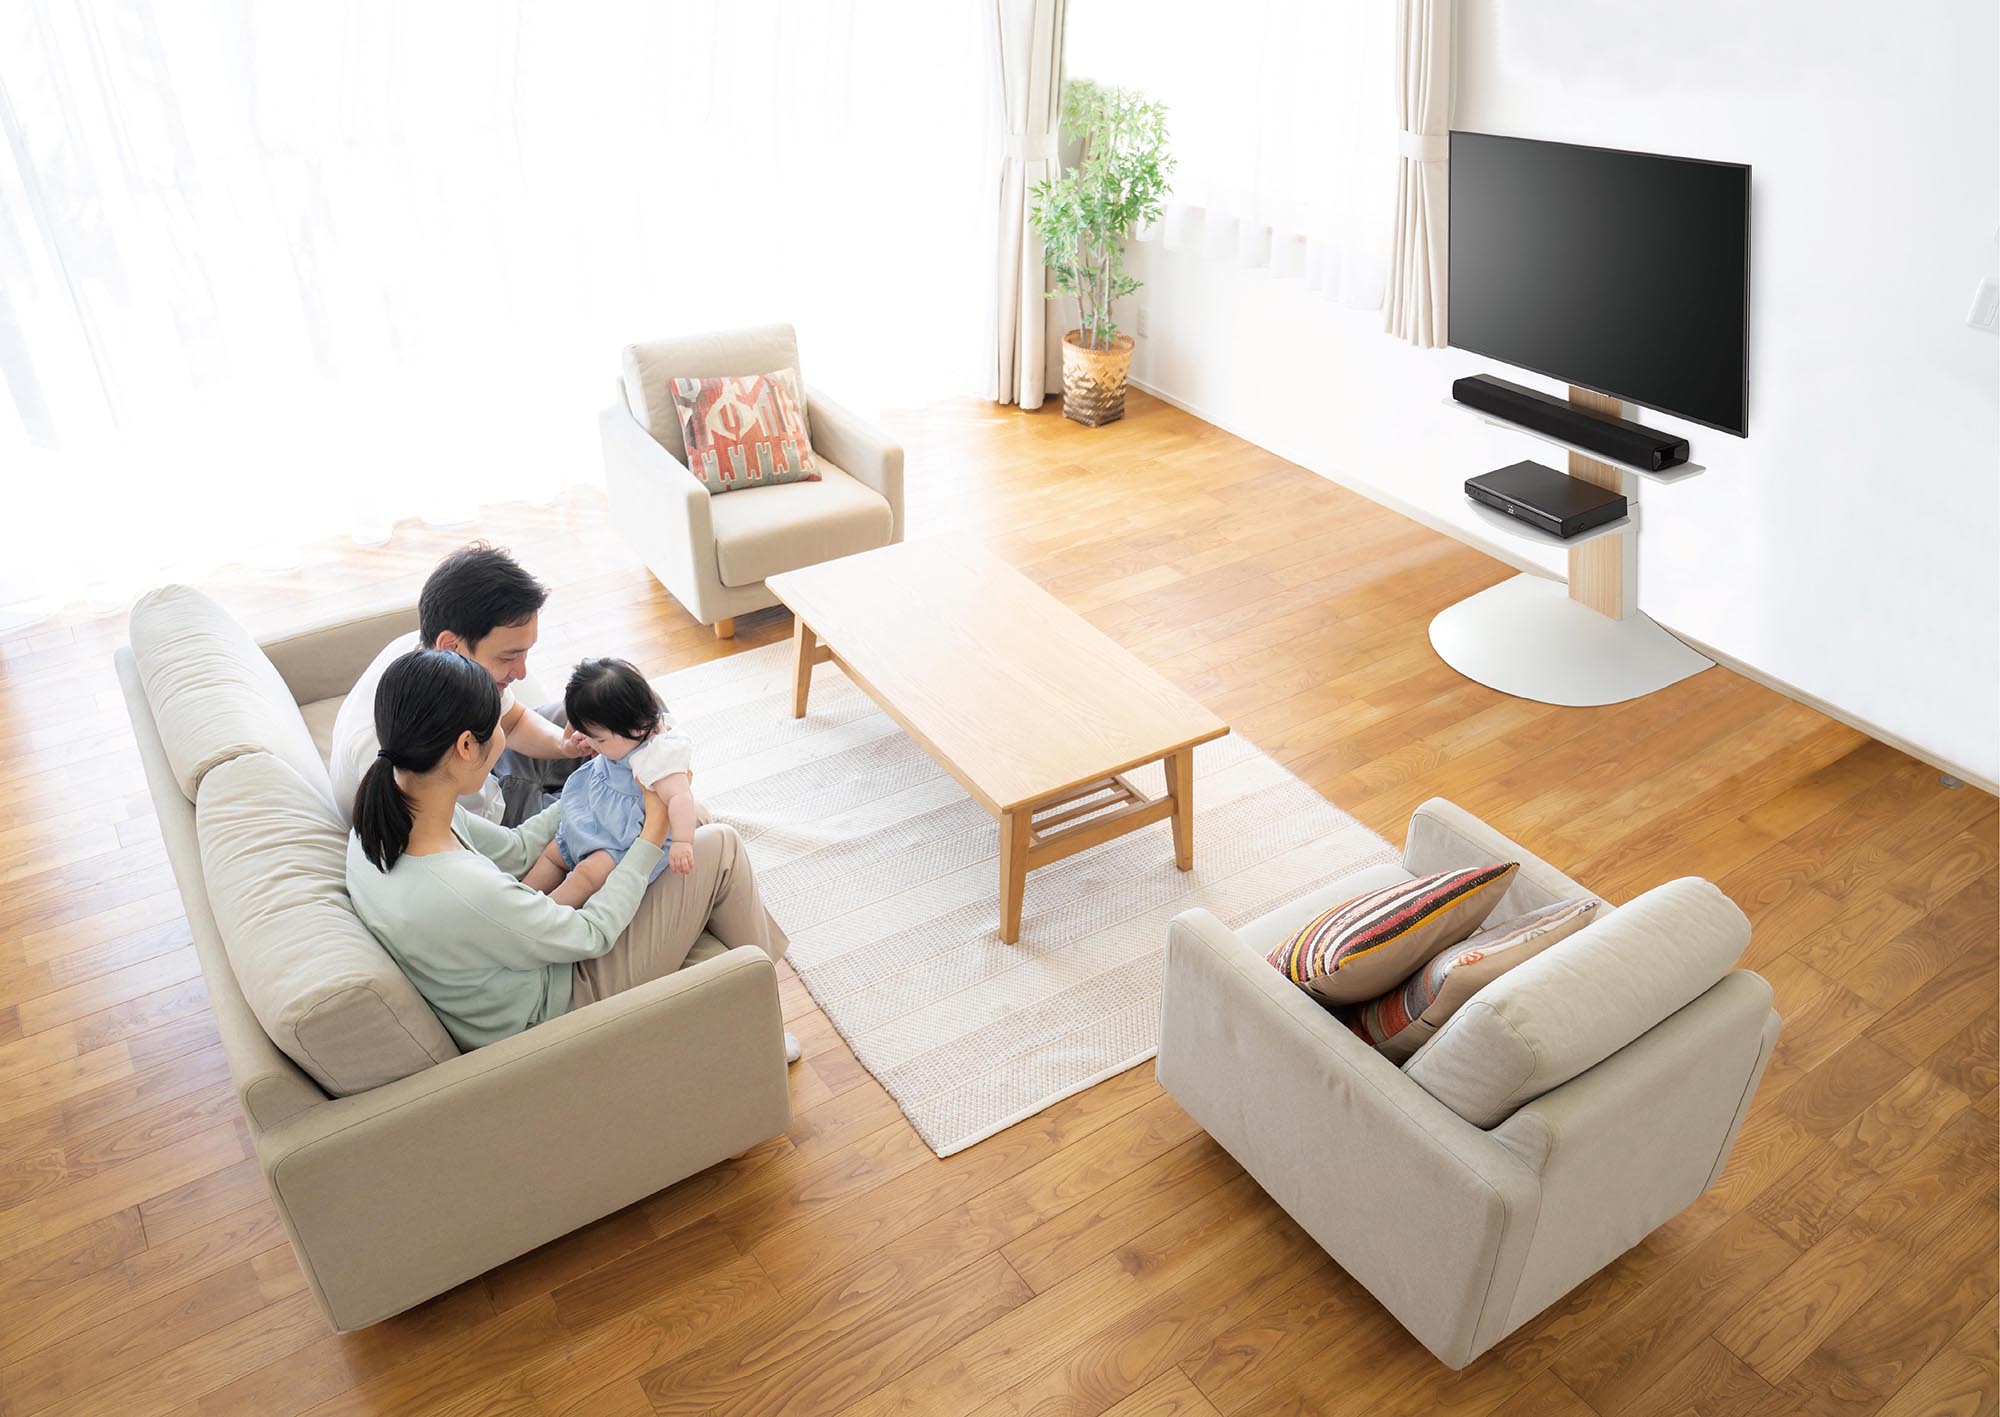 【人気商品】朝日木材加工 壁寄せ テレビスタンド WS-B style オプショ